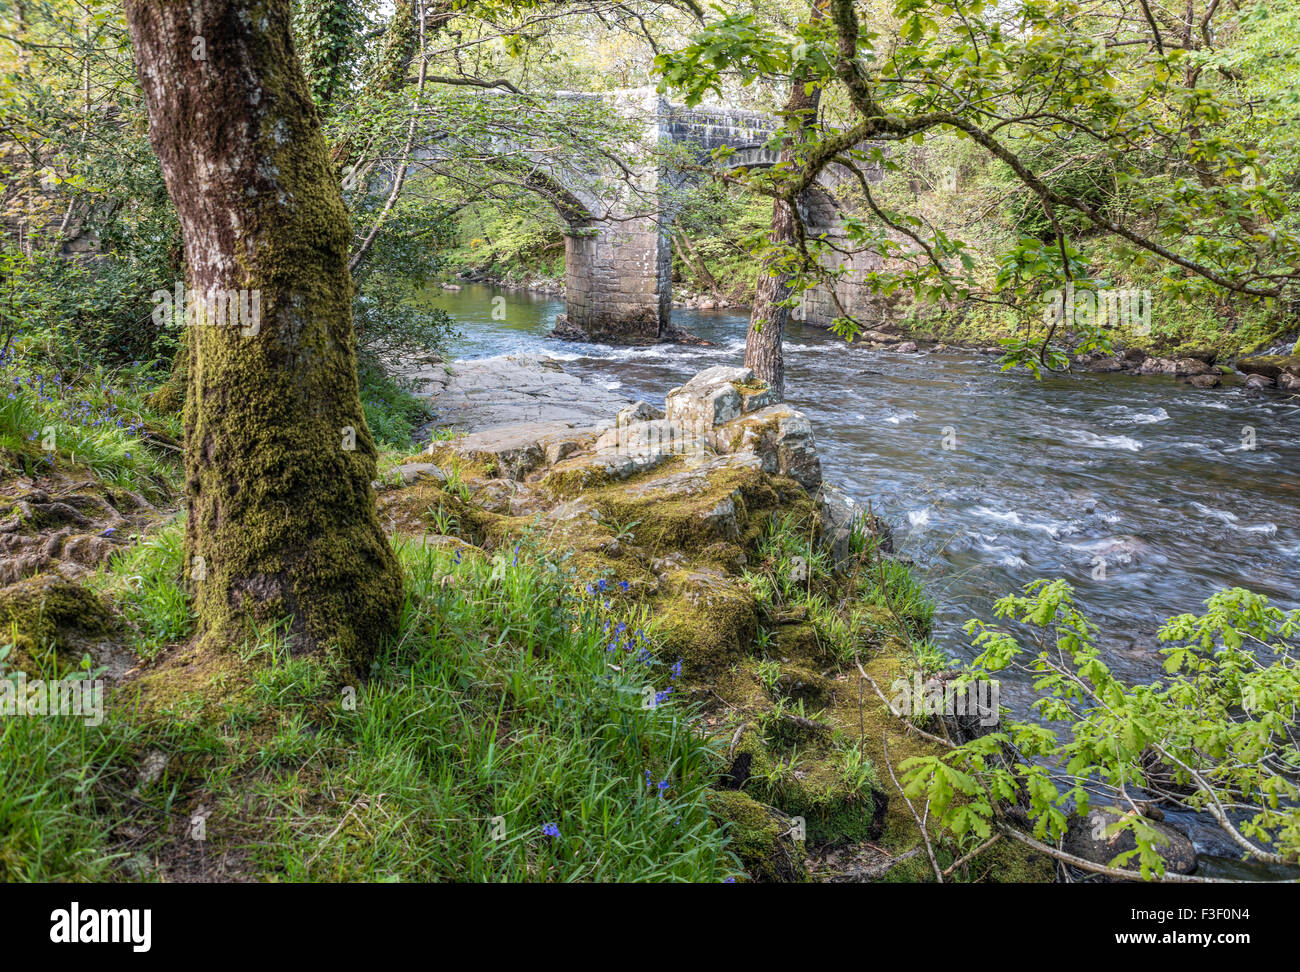 Eichenwald am Flussufer am Dart River, Dartmoor National Park, Devon, England, Großbritannien Stockfoto